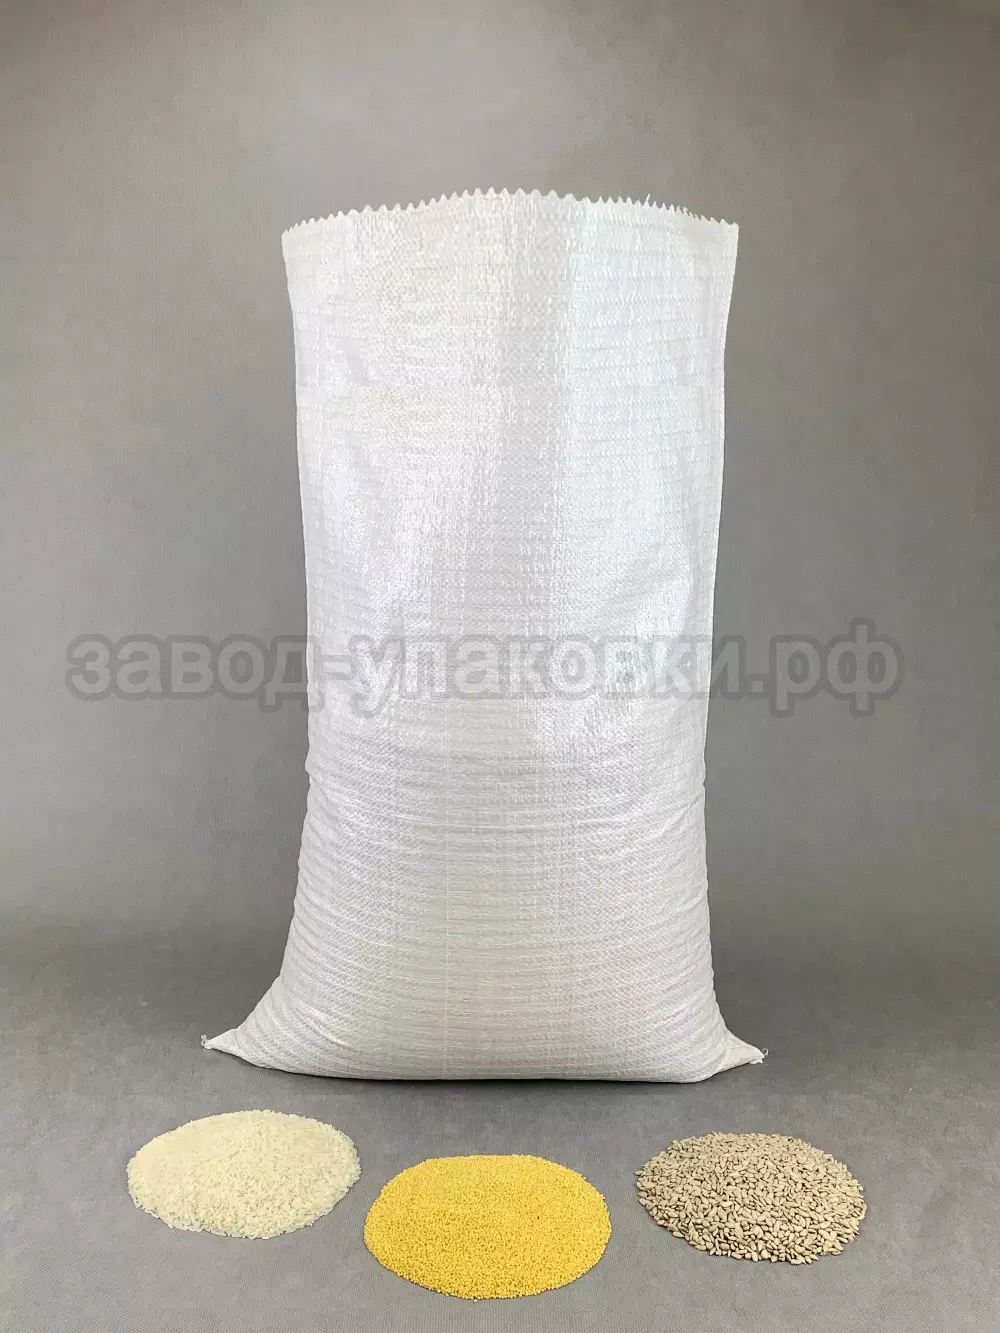 Мешки полипропиленовые плотные 55x95 см на 40-50 кг